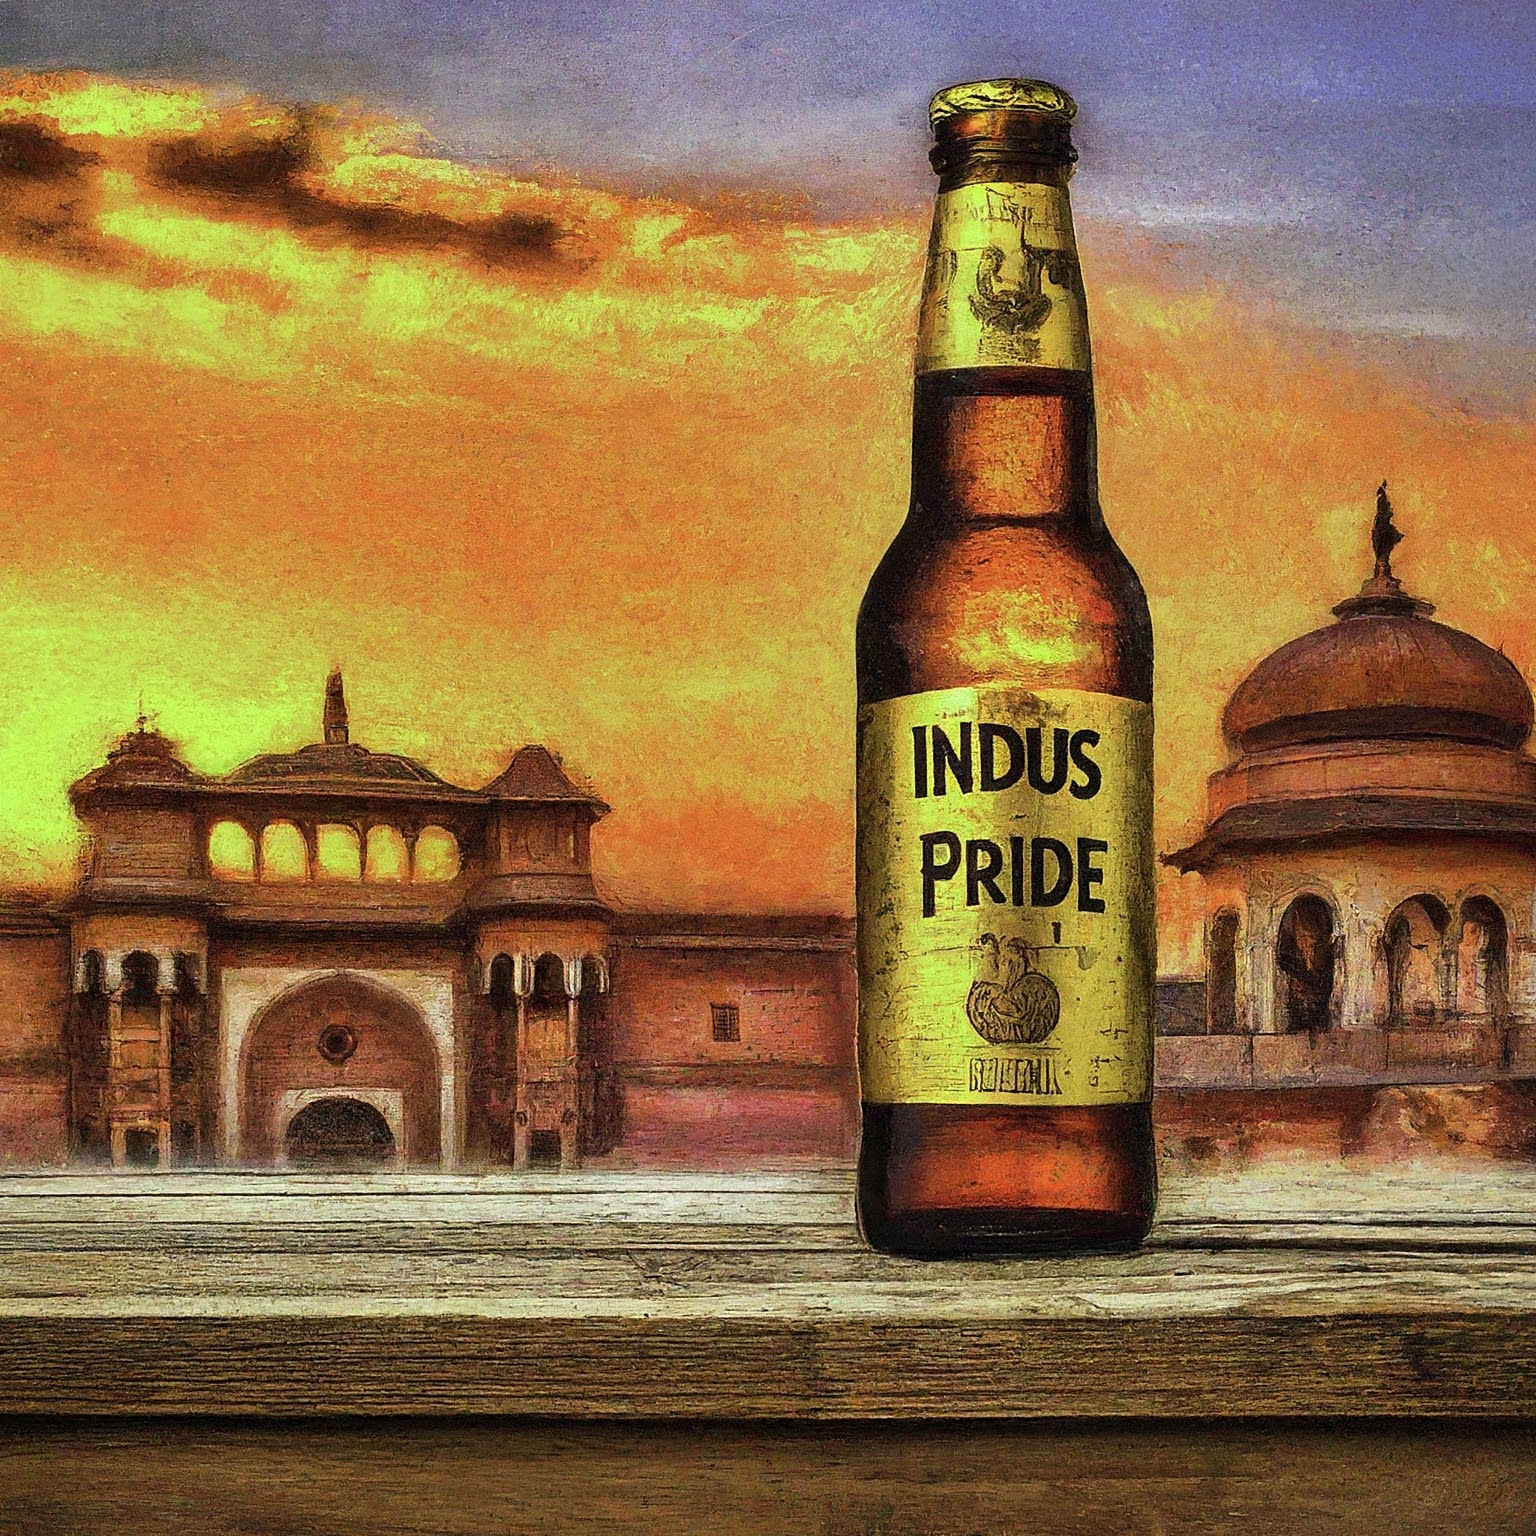 Indus Pride by SABMiller